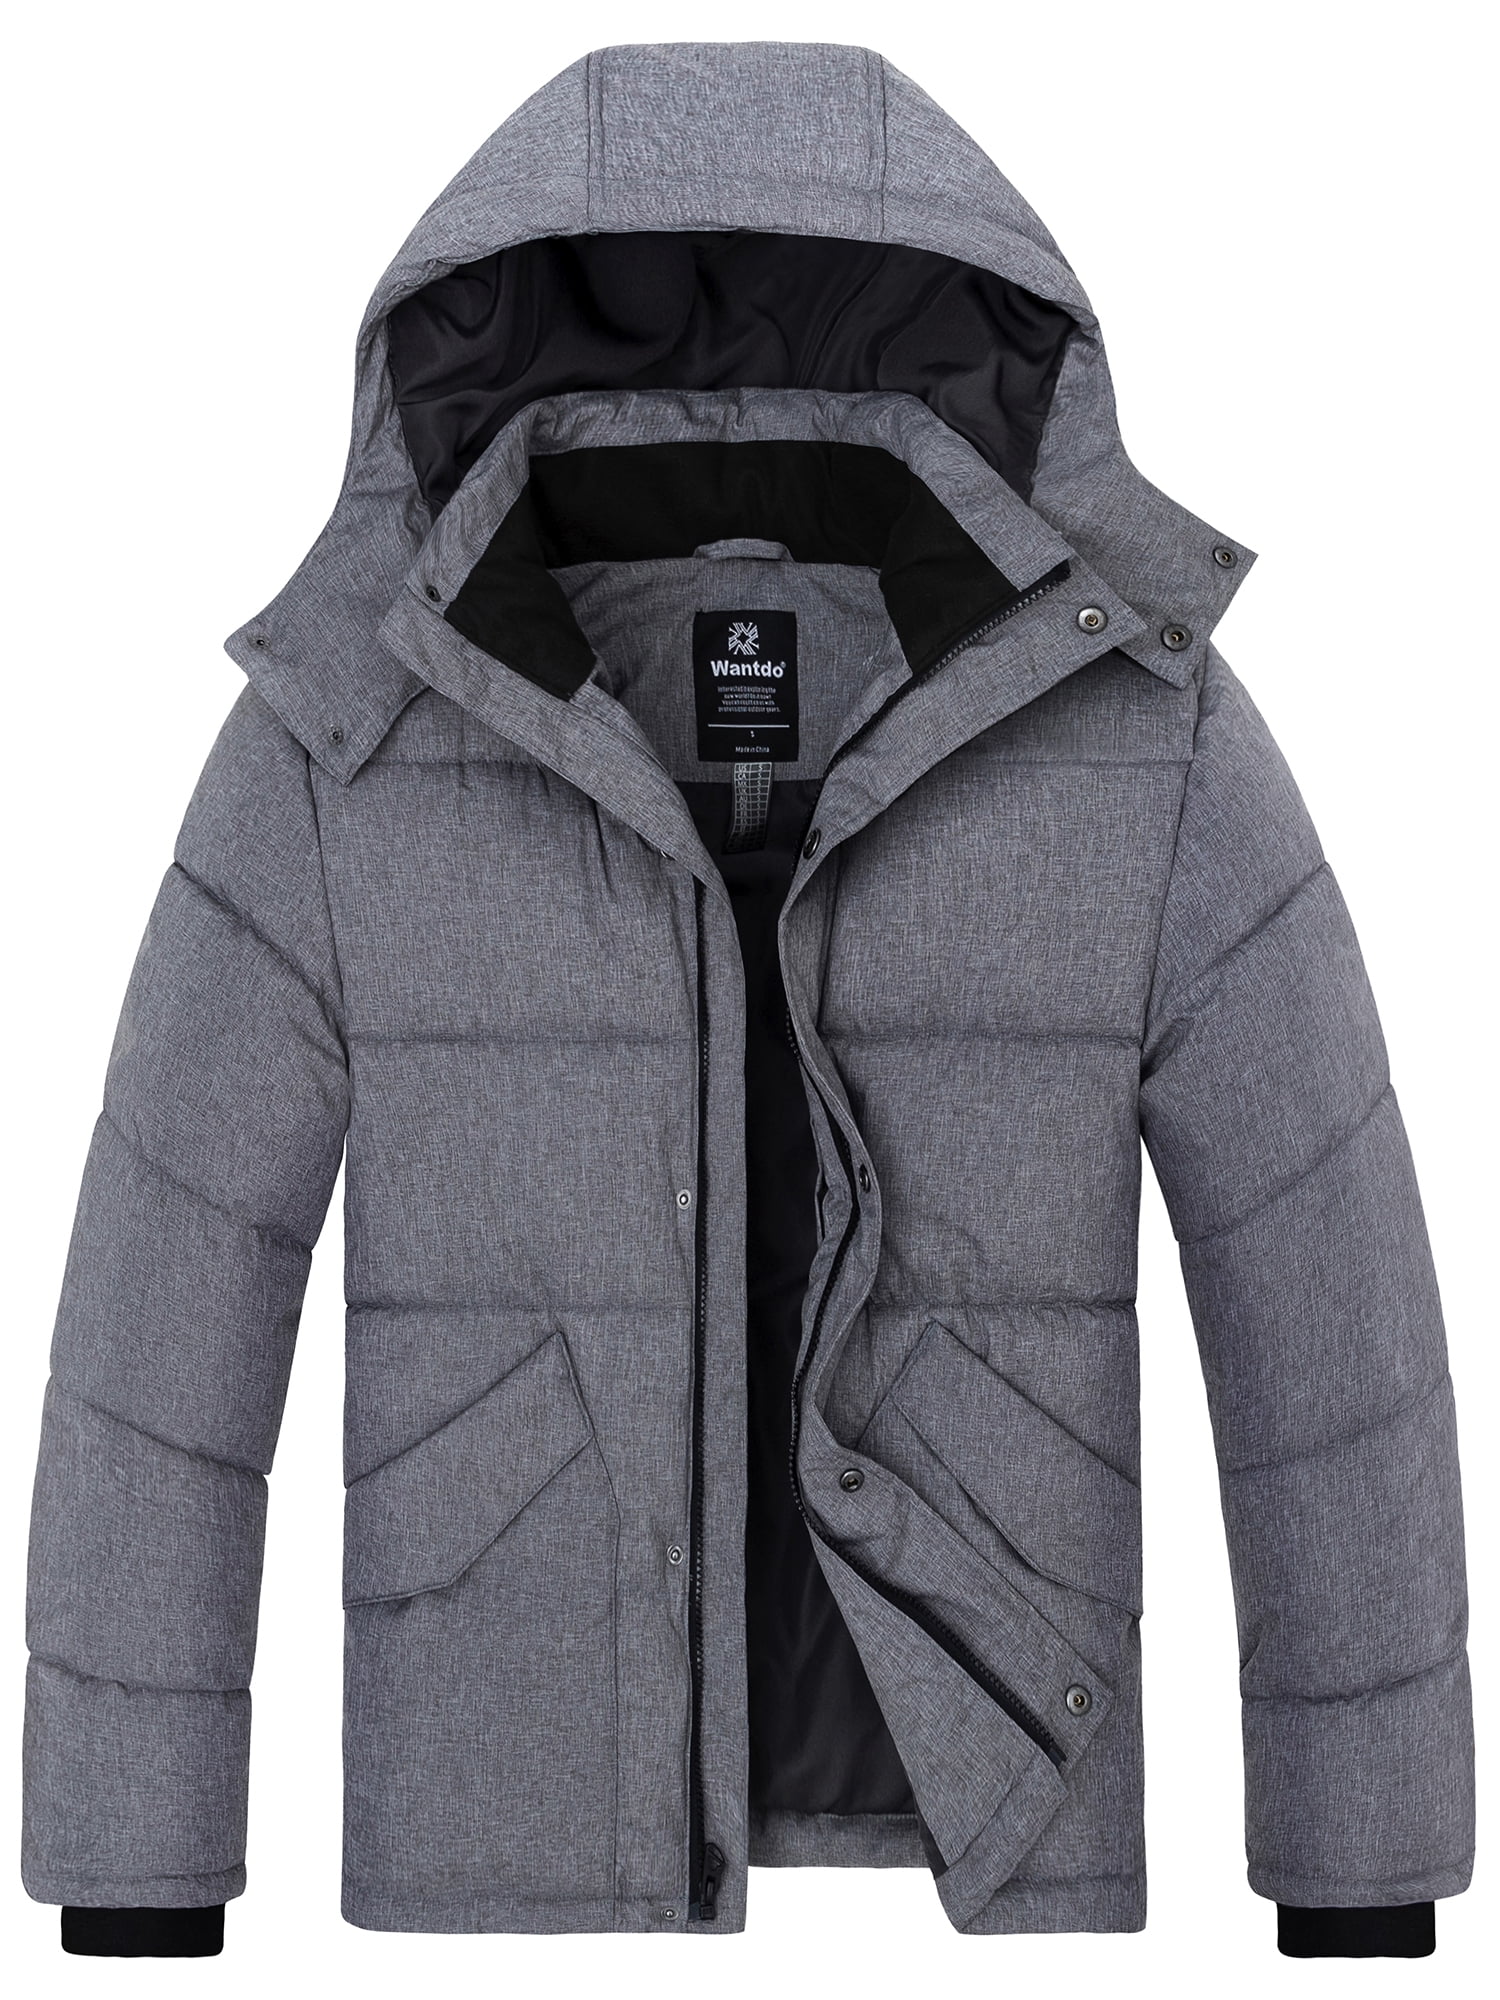 Wantdo Men's Puffer Coats Heavy Winter Jackets Warm Hooded Winter Coat ...